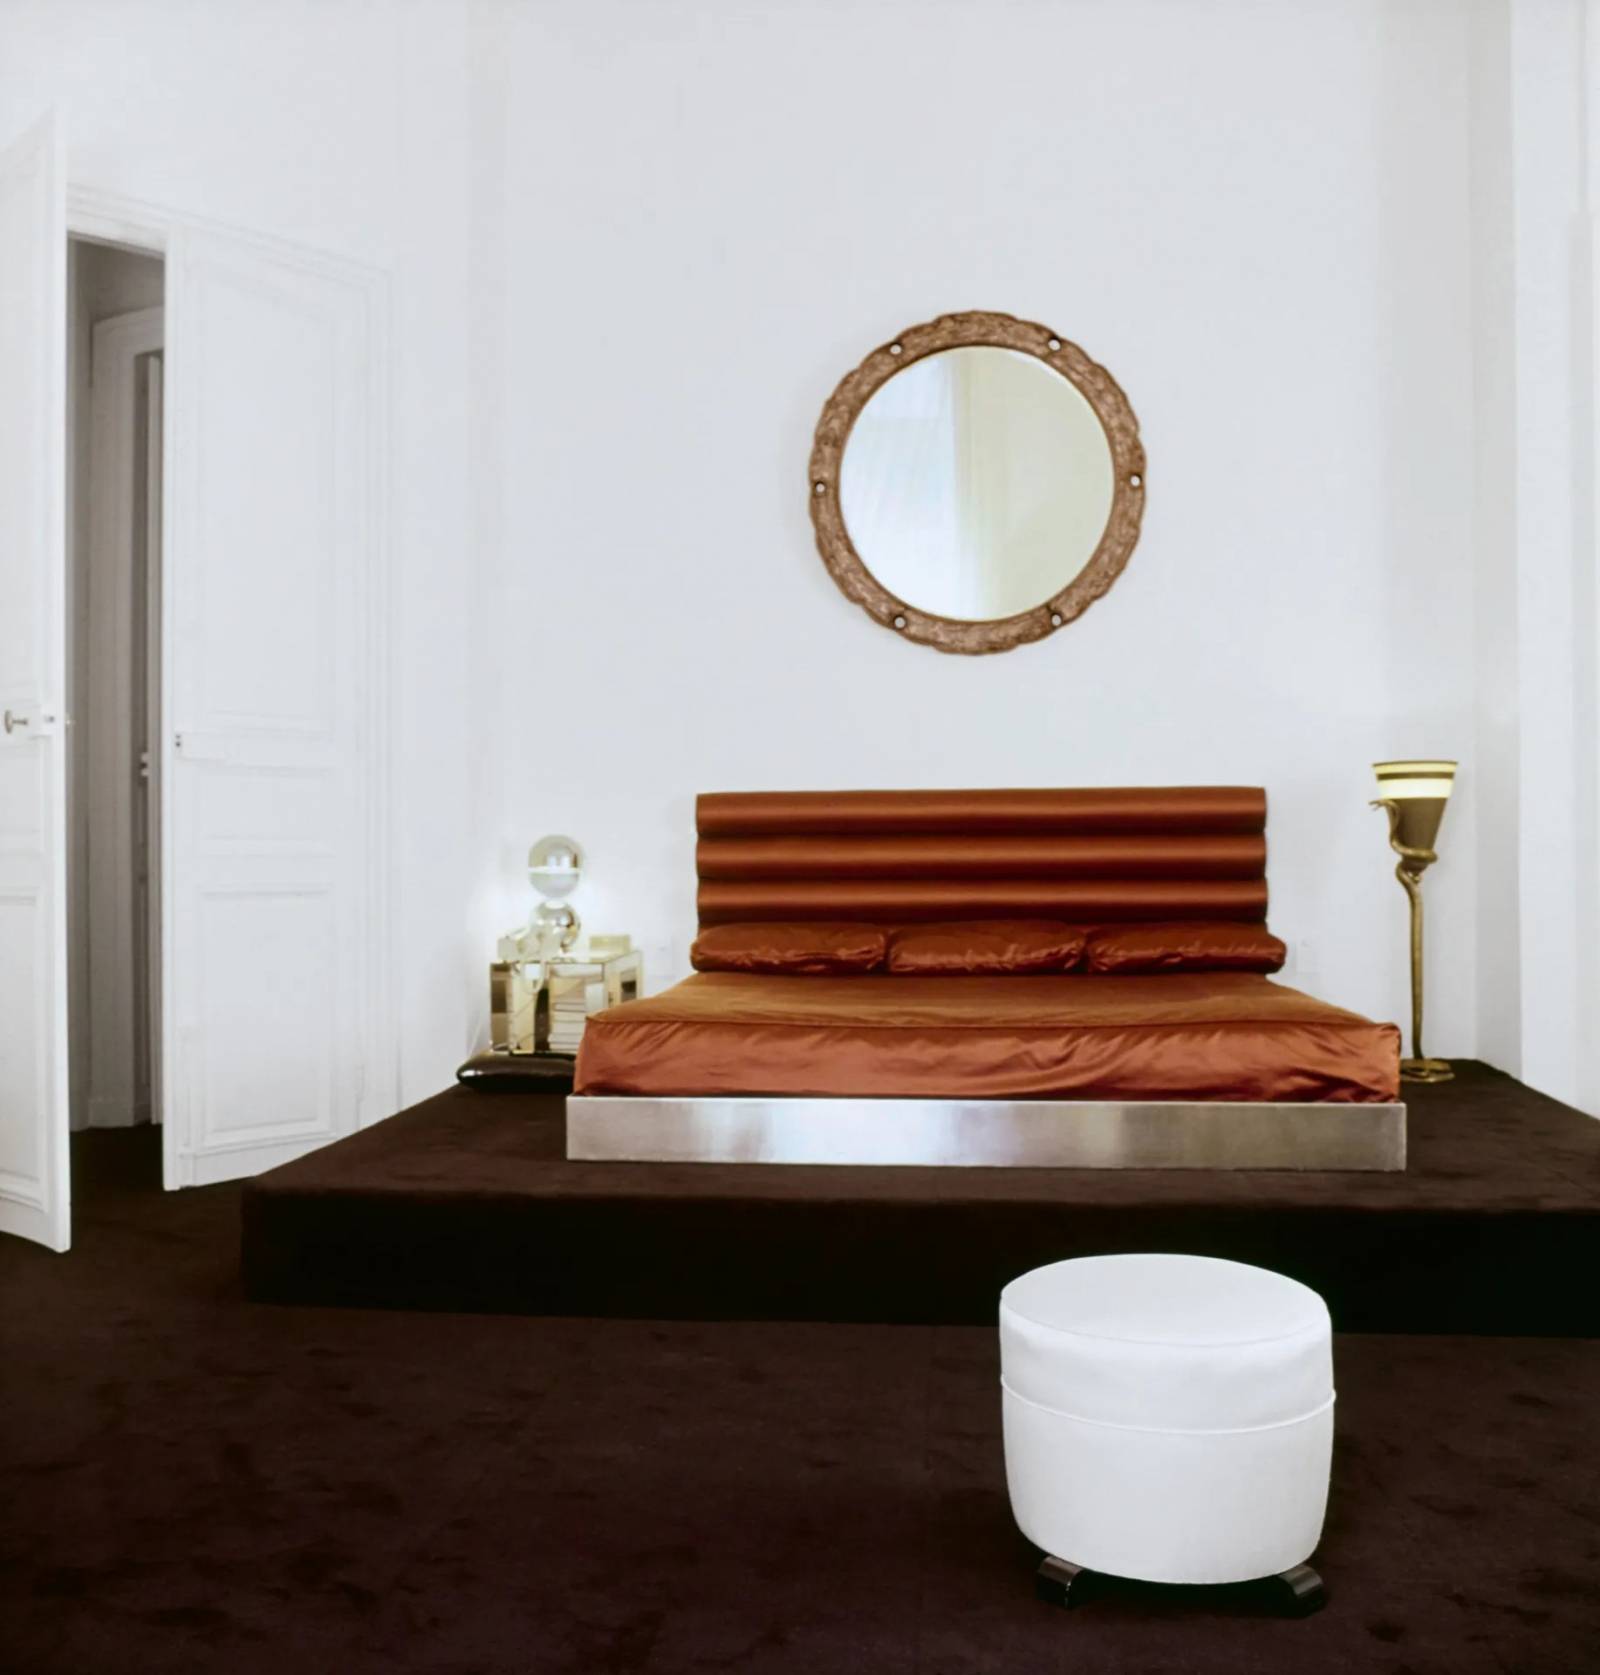 W sypialni na platformie pokrytej czekoladowo-brązową wykładziną znajduje się łóżko z metalową podstawą z poprzedniego mieszkania, uzupełnione za-główkiem ze skóry warstwowej, którego projekt przypisuje się Eugène Print-zowi.